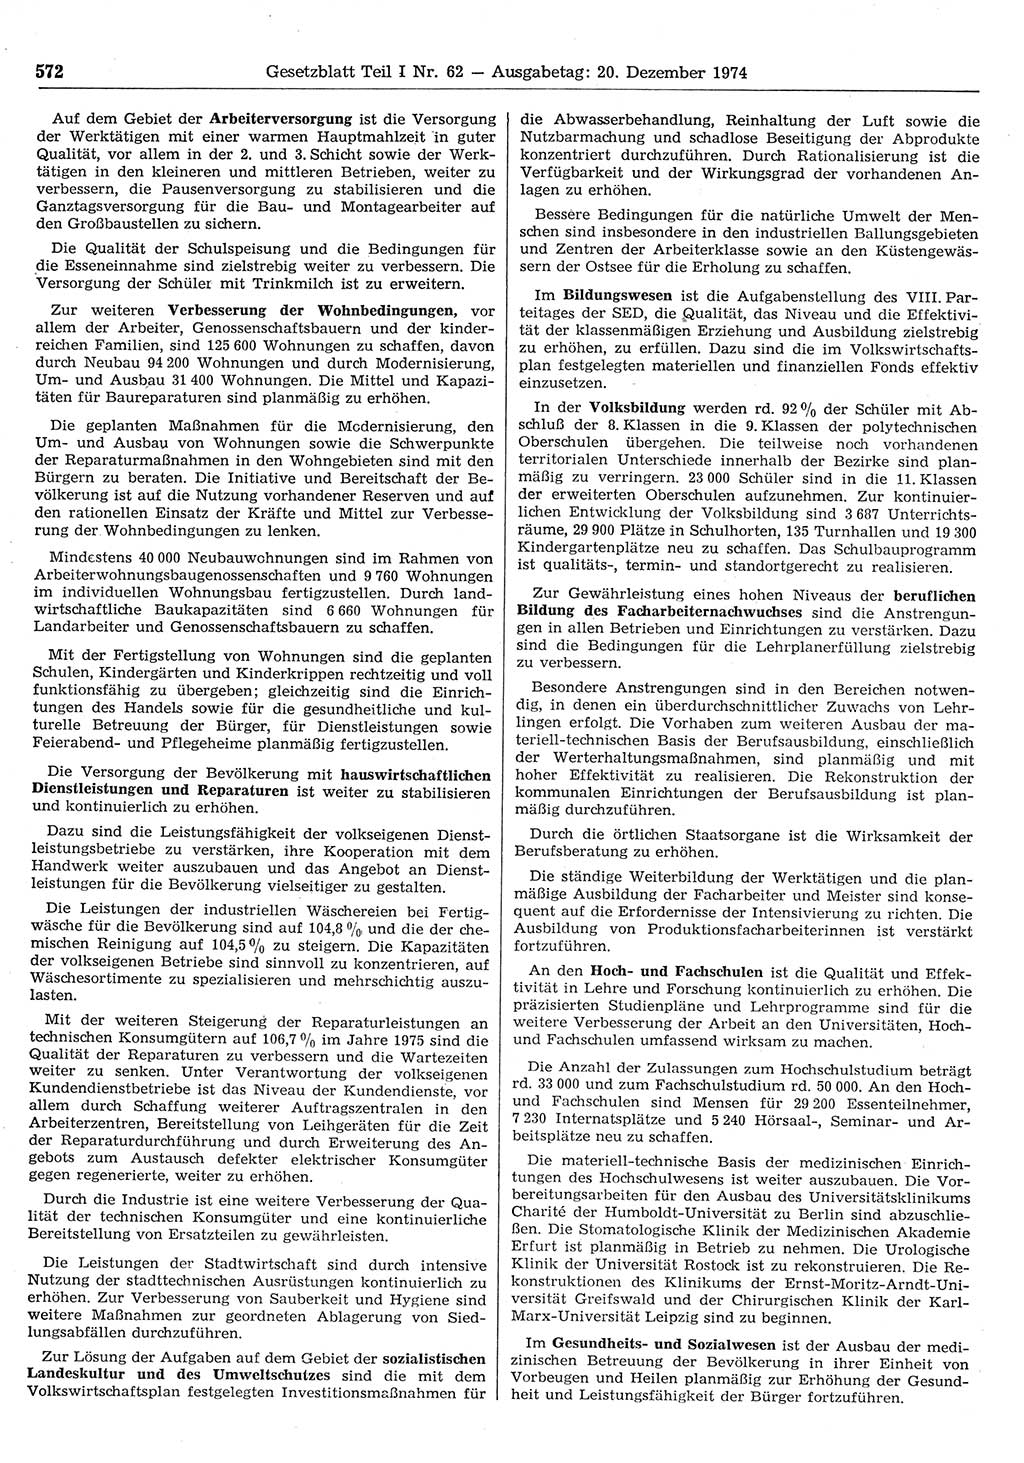 Gesetzblatt (GBl.) der Deutschen Demokratischen Republik (DDR) Teil Ⅰ 1974, Seite 572 (GBl. DDR Ⅰ 1974, S. 572)